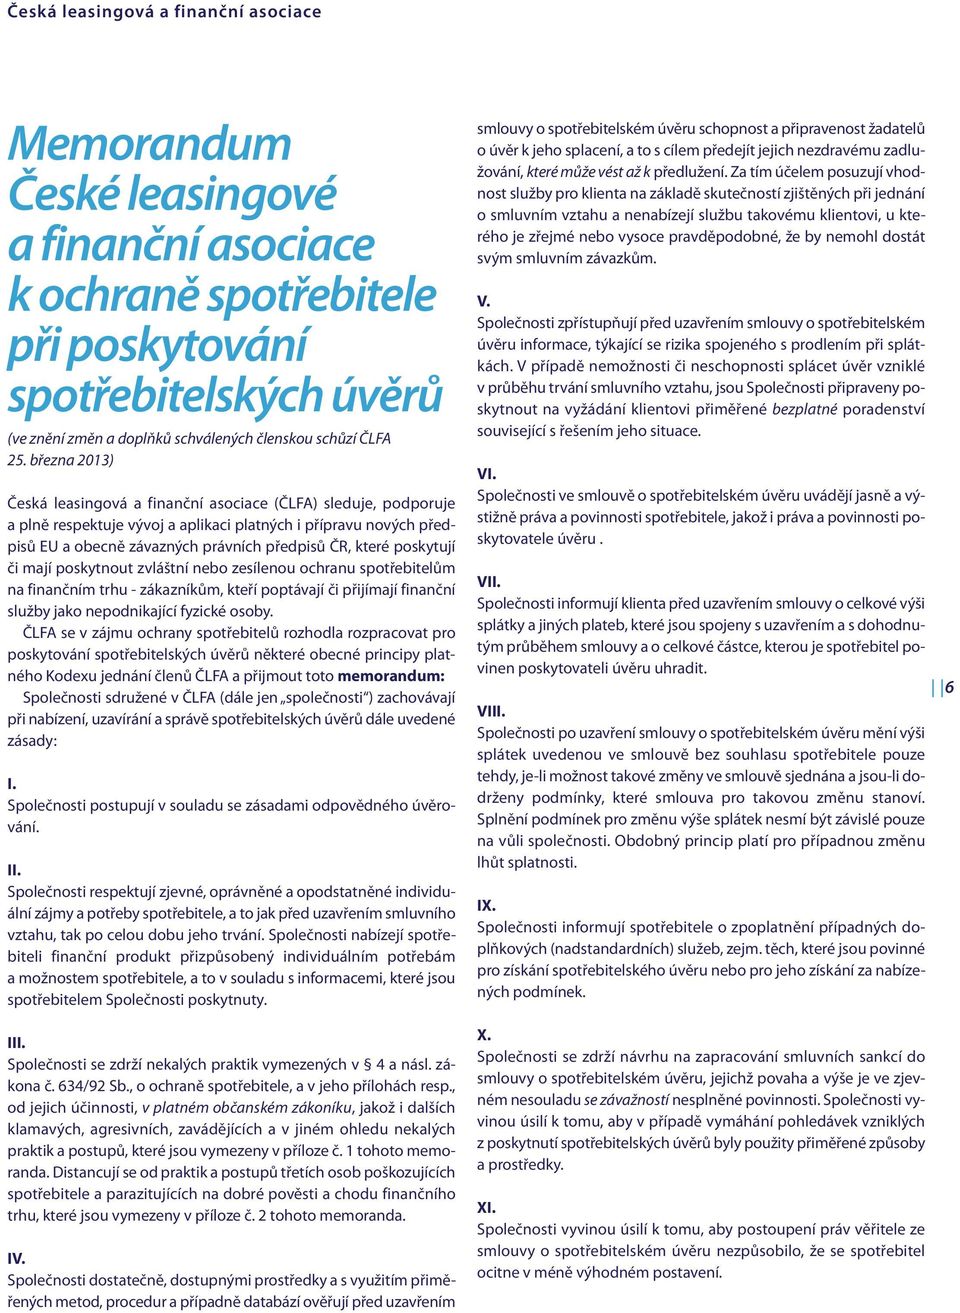 března 2013) Česká leasingová a finanční asociace (ČLFA) sleduje, podporuje a plně respektuje vývoj a aplikaci platných i přípravu nových předpisů EU a obecně závazných právních předpisů ČR, které